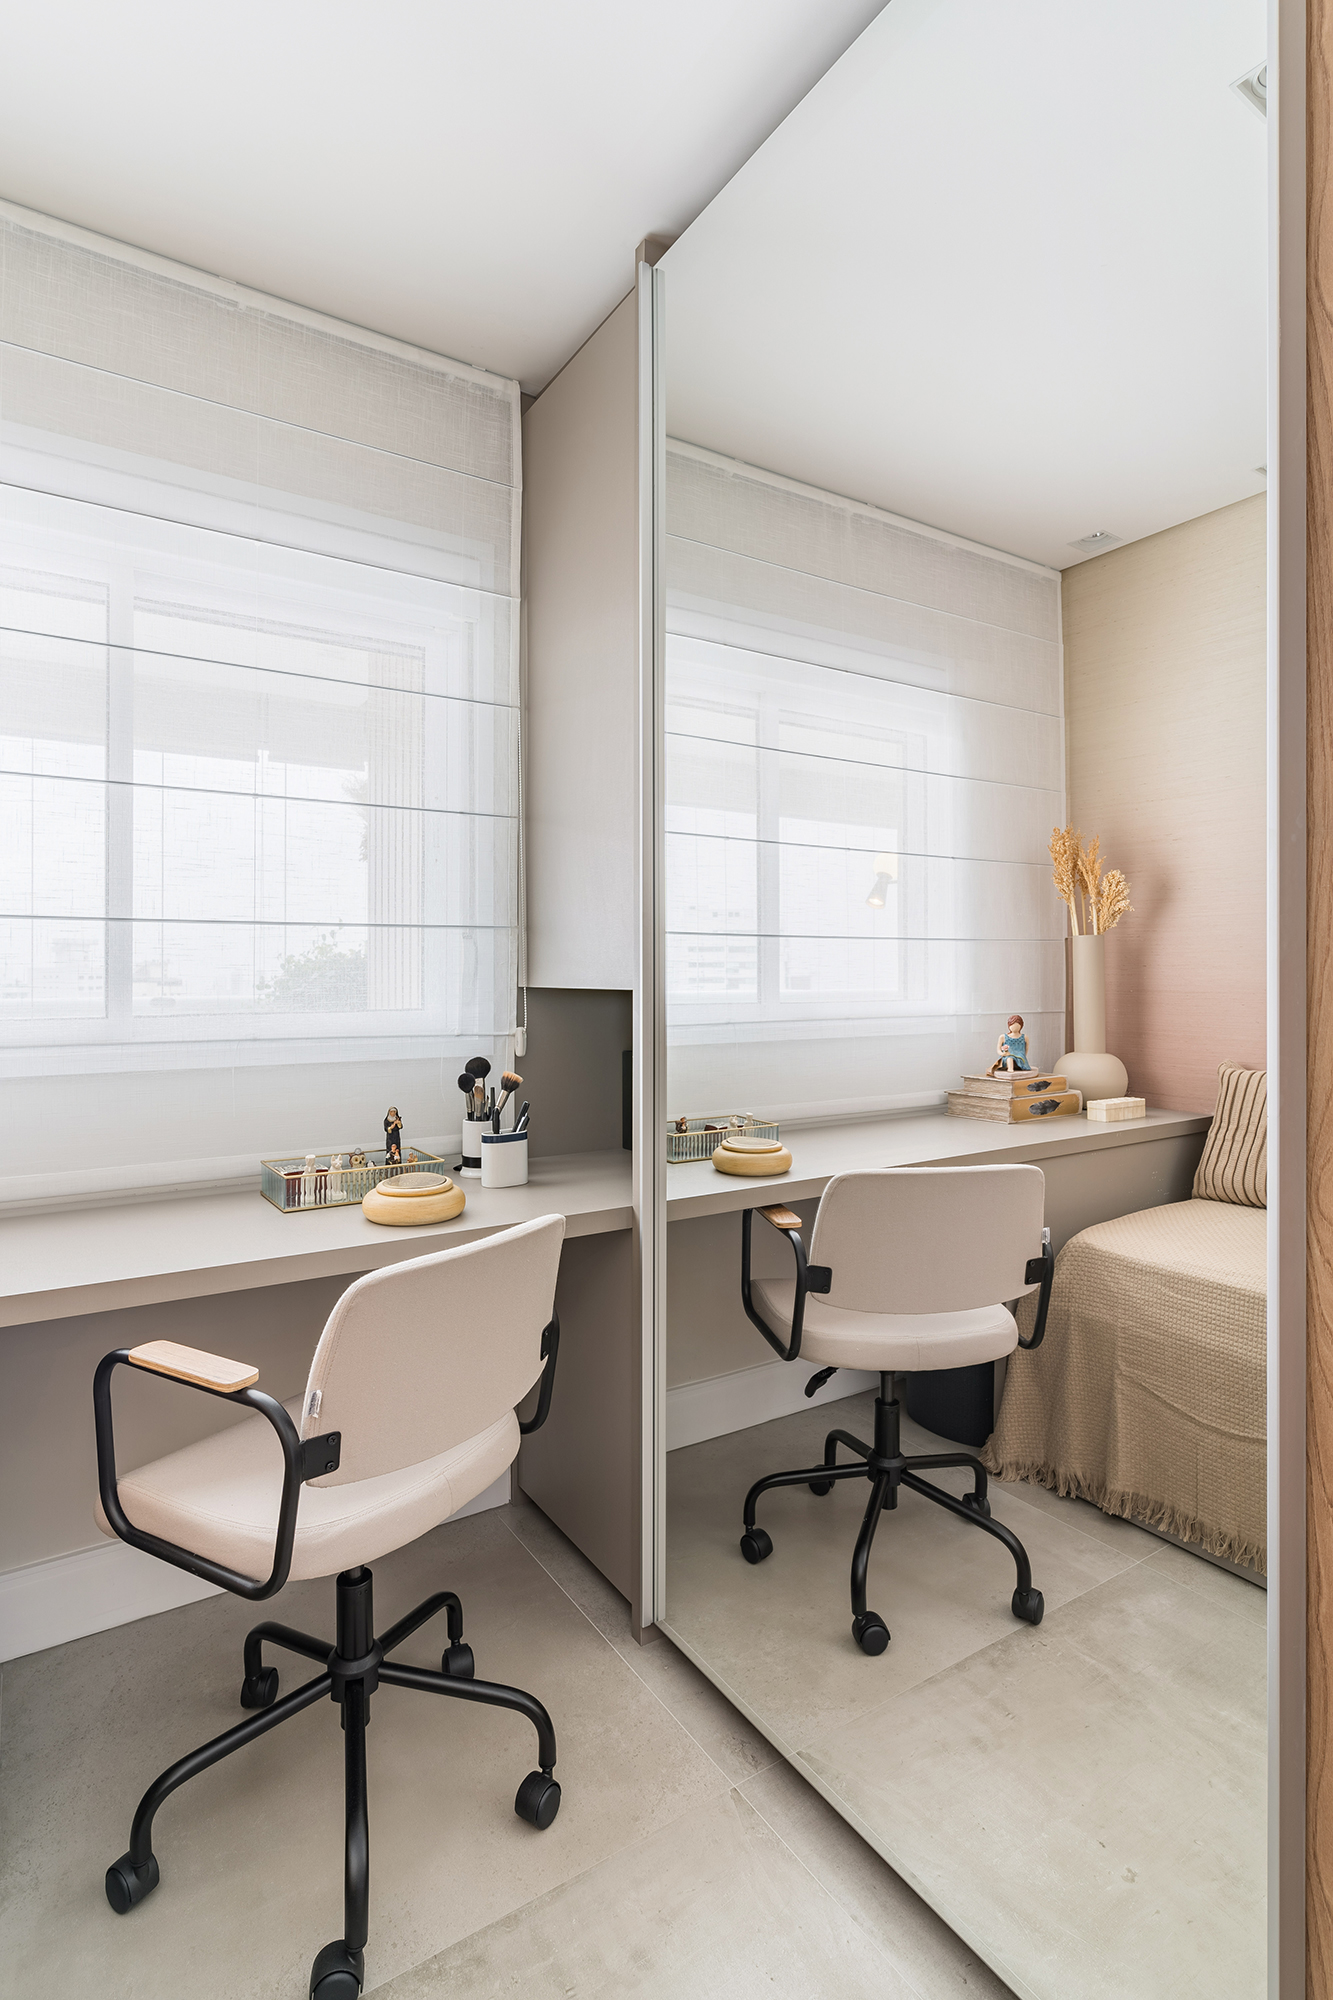 Apartamento de 60 m² ganha décor delicado repleto de madeira e plantas. Projeto de Bia Hajnal. Na foto, home office com papel de parede que imita linho.